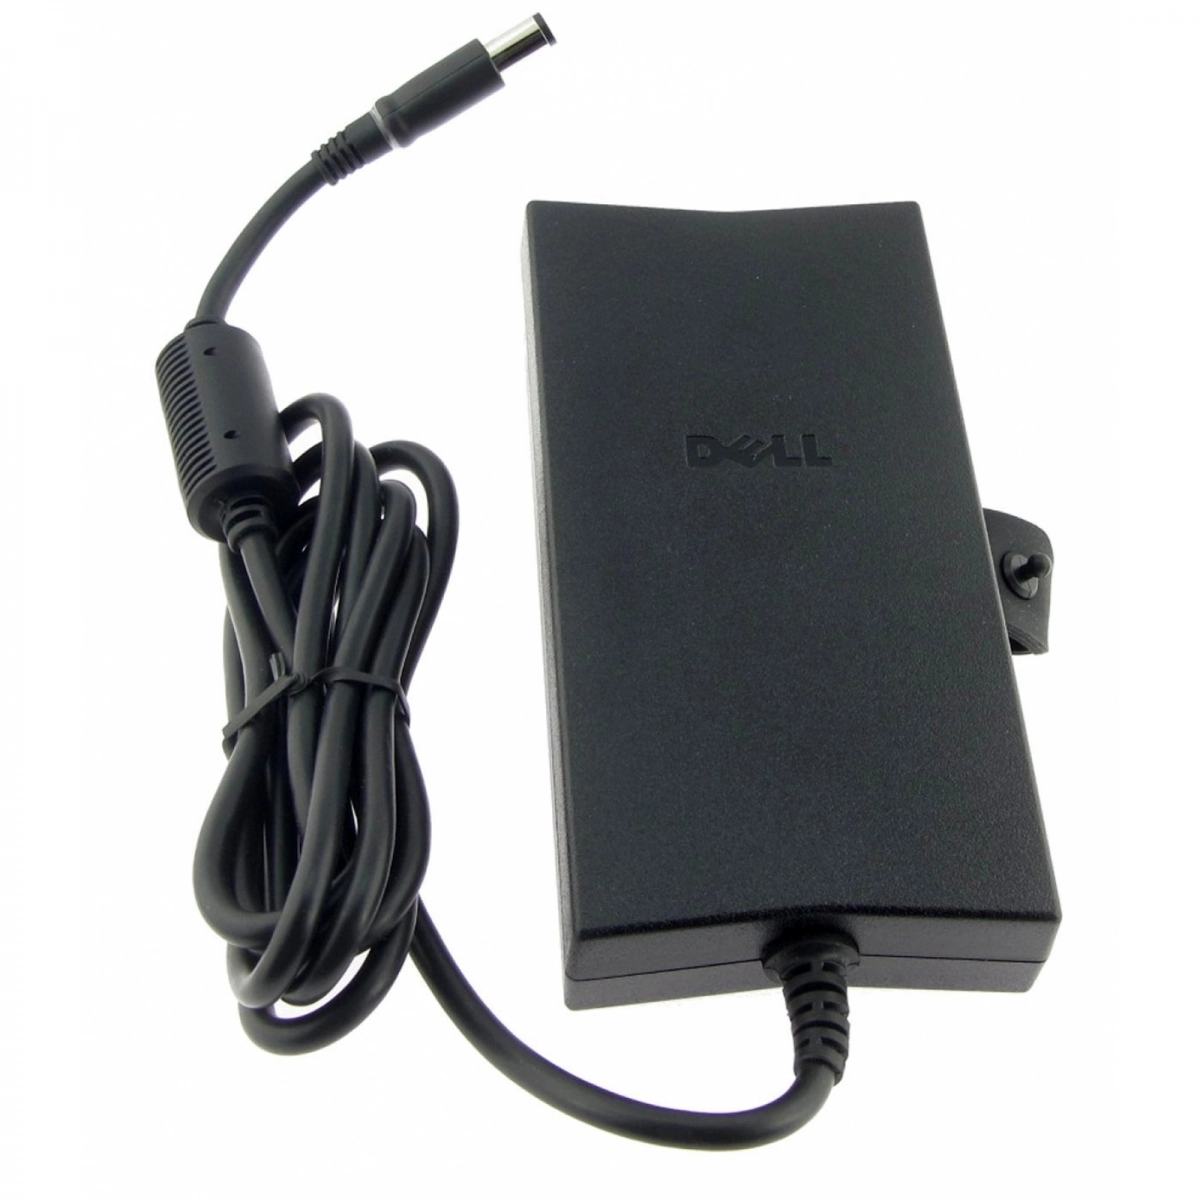 Original DELL Slim 130 Watt Netzteil (DA130PE1-00) PA-4E Family 19.5V 6.7A, für fast alle DELL Notebooks